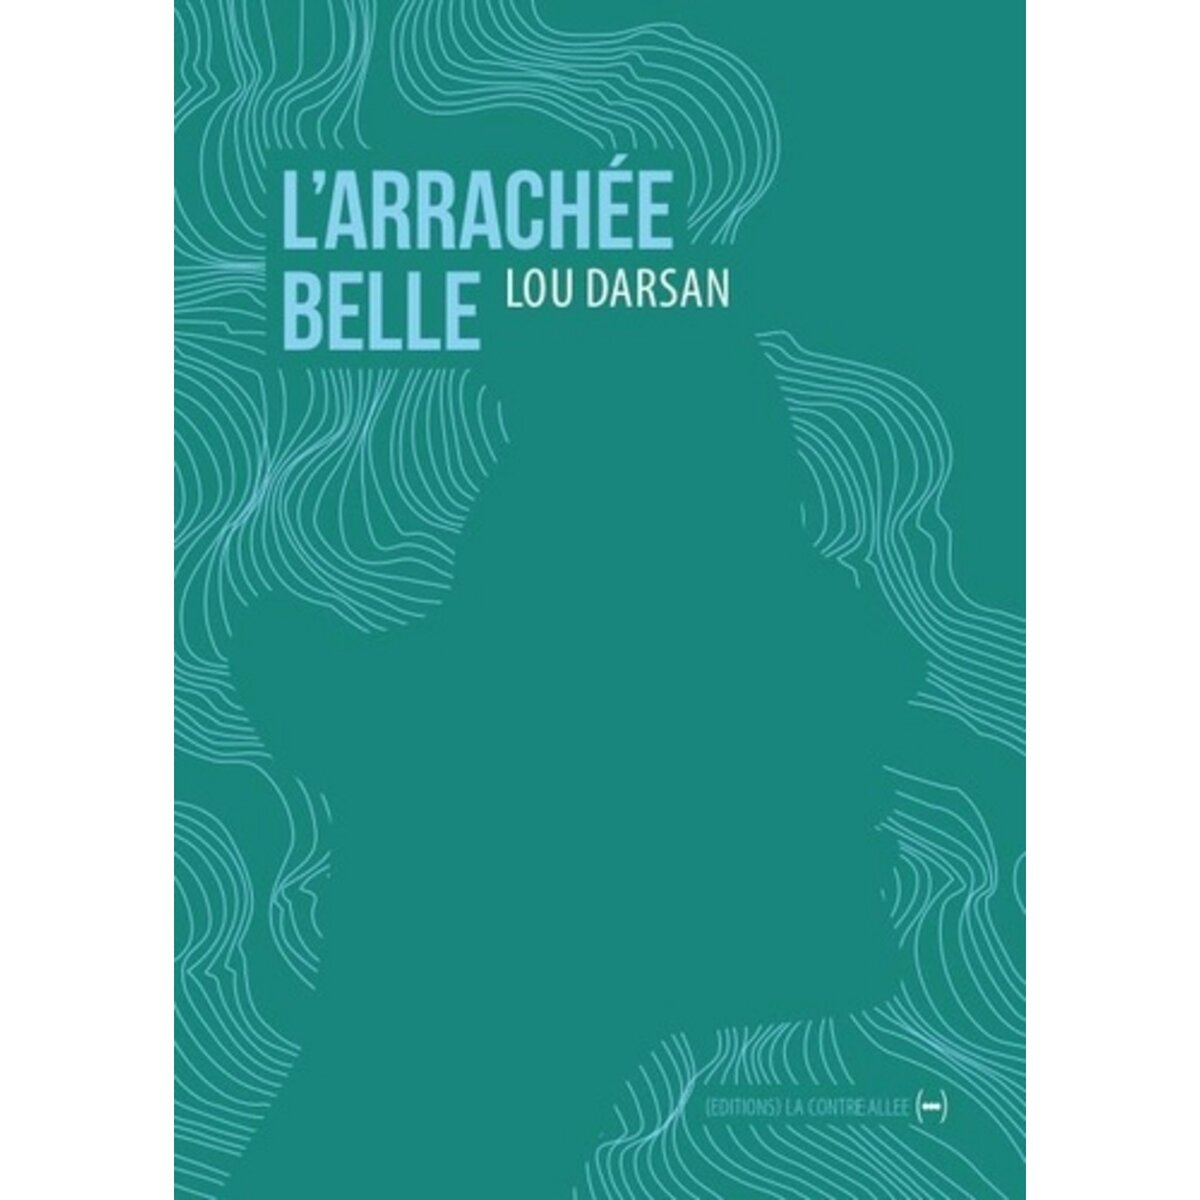  L'ARRACHEE BELLE, Darsan Lou